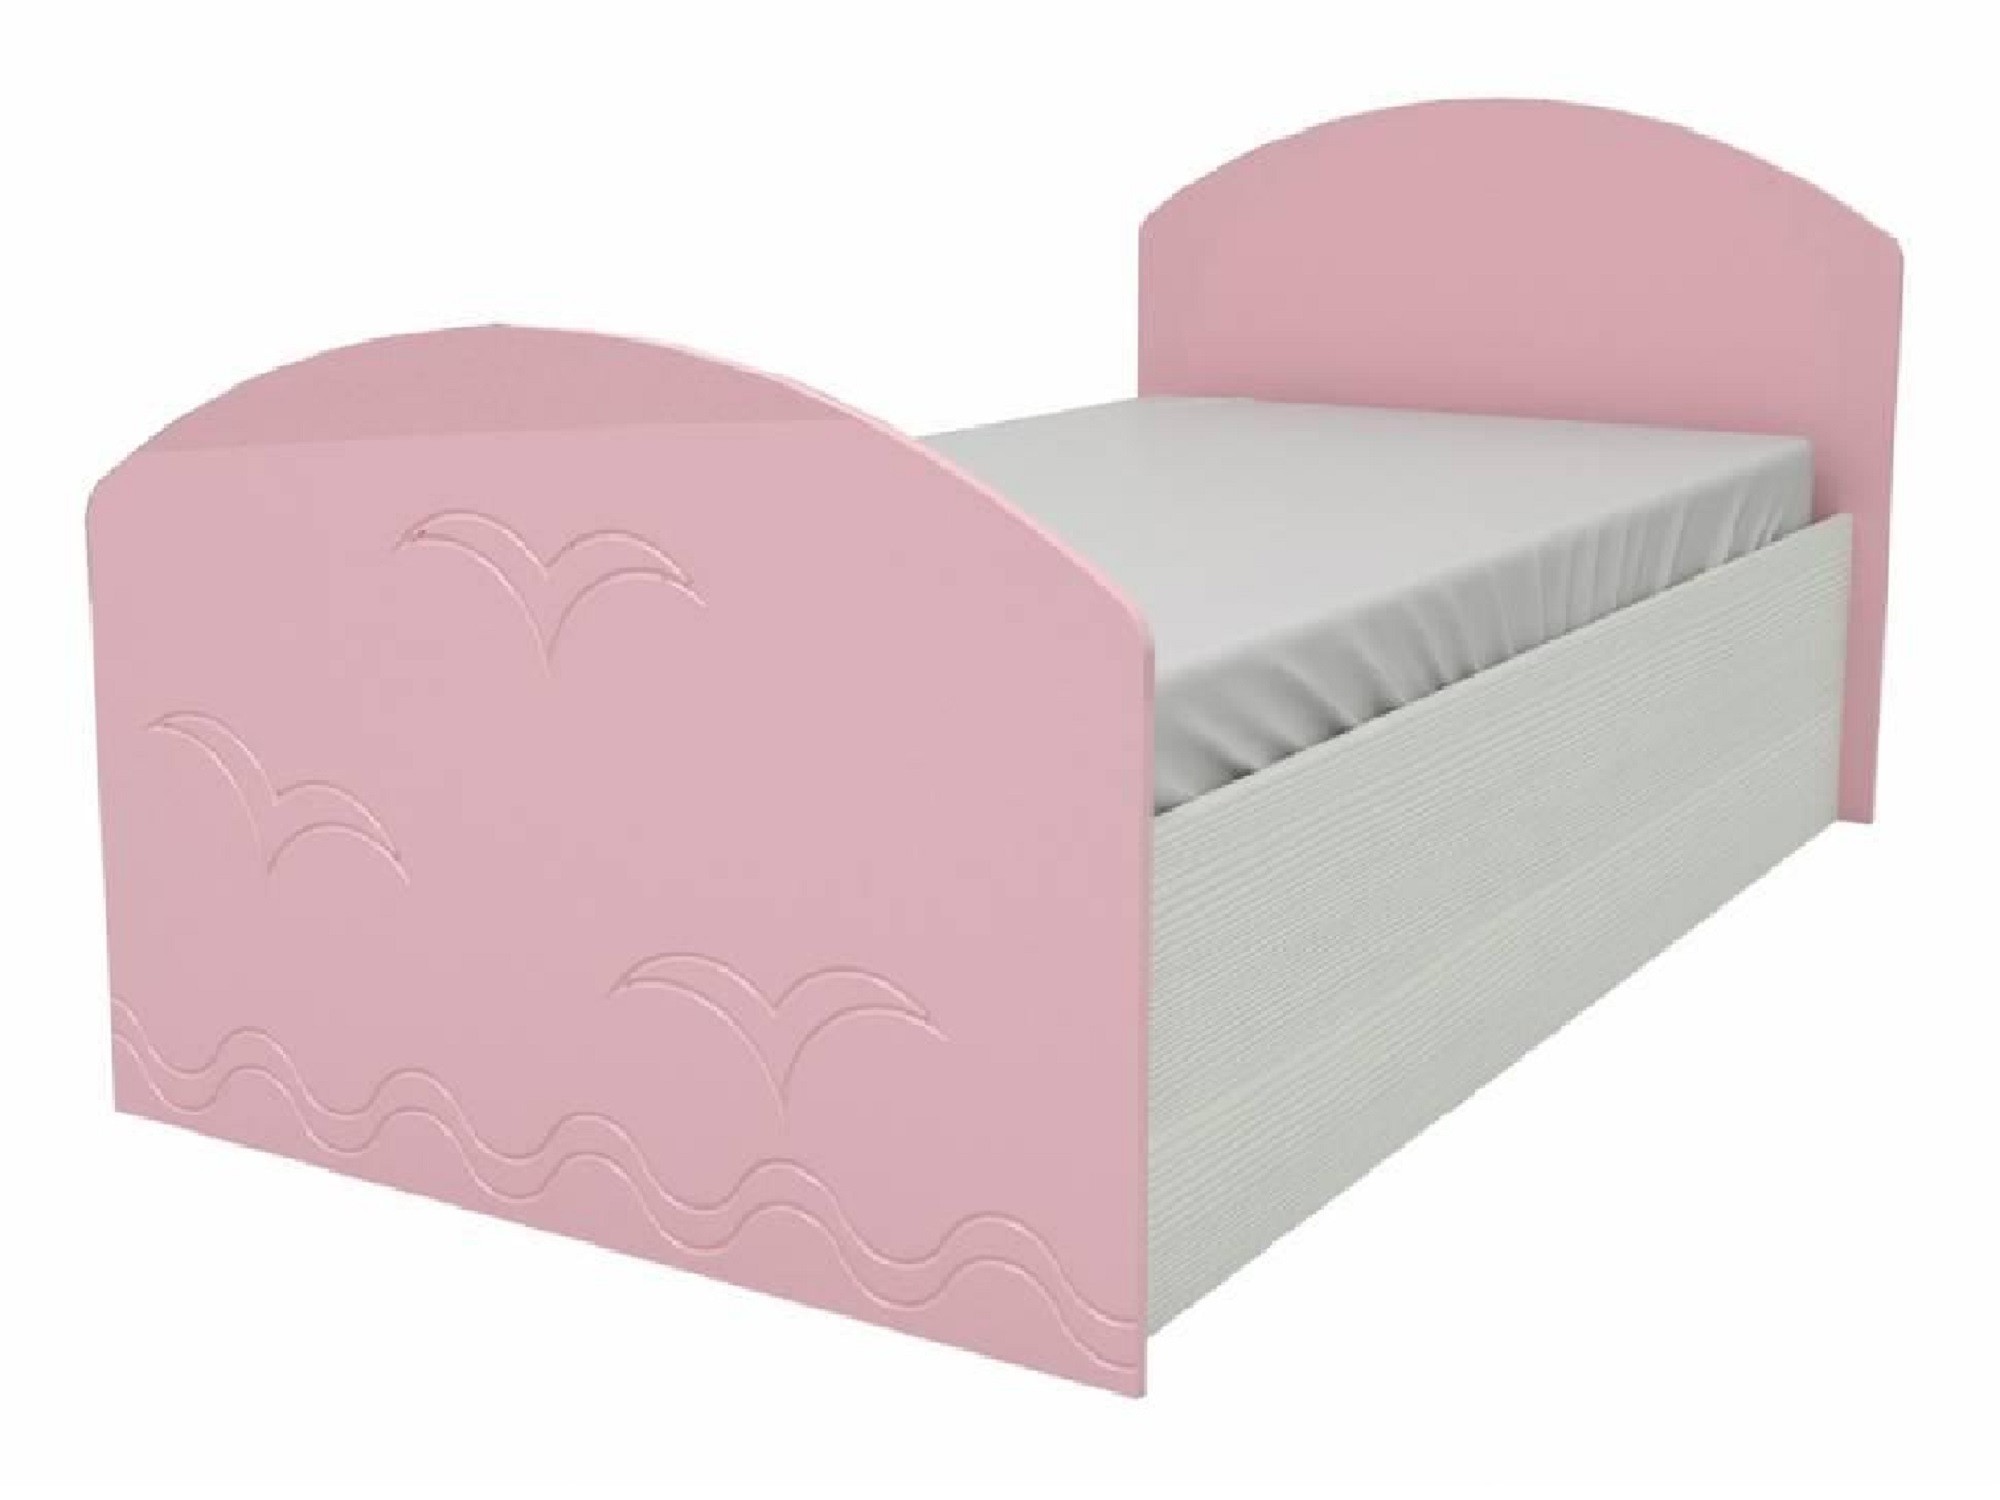 Юниор-2 Детская кровать 80, металлик (Розовый металлик, Дуб белёный) Дуб белёный, МДФ, ЛДСП детская кровать дельфин 80х200 синий металлик дуб белёный синий металлик мдф лдсп